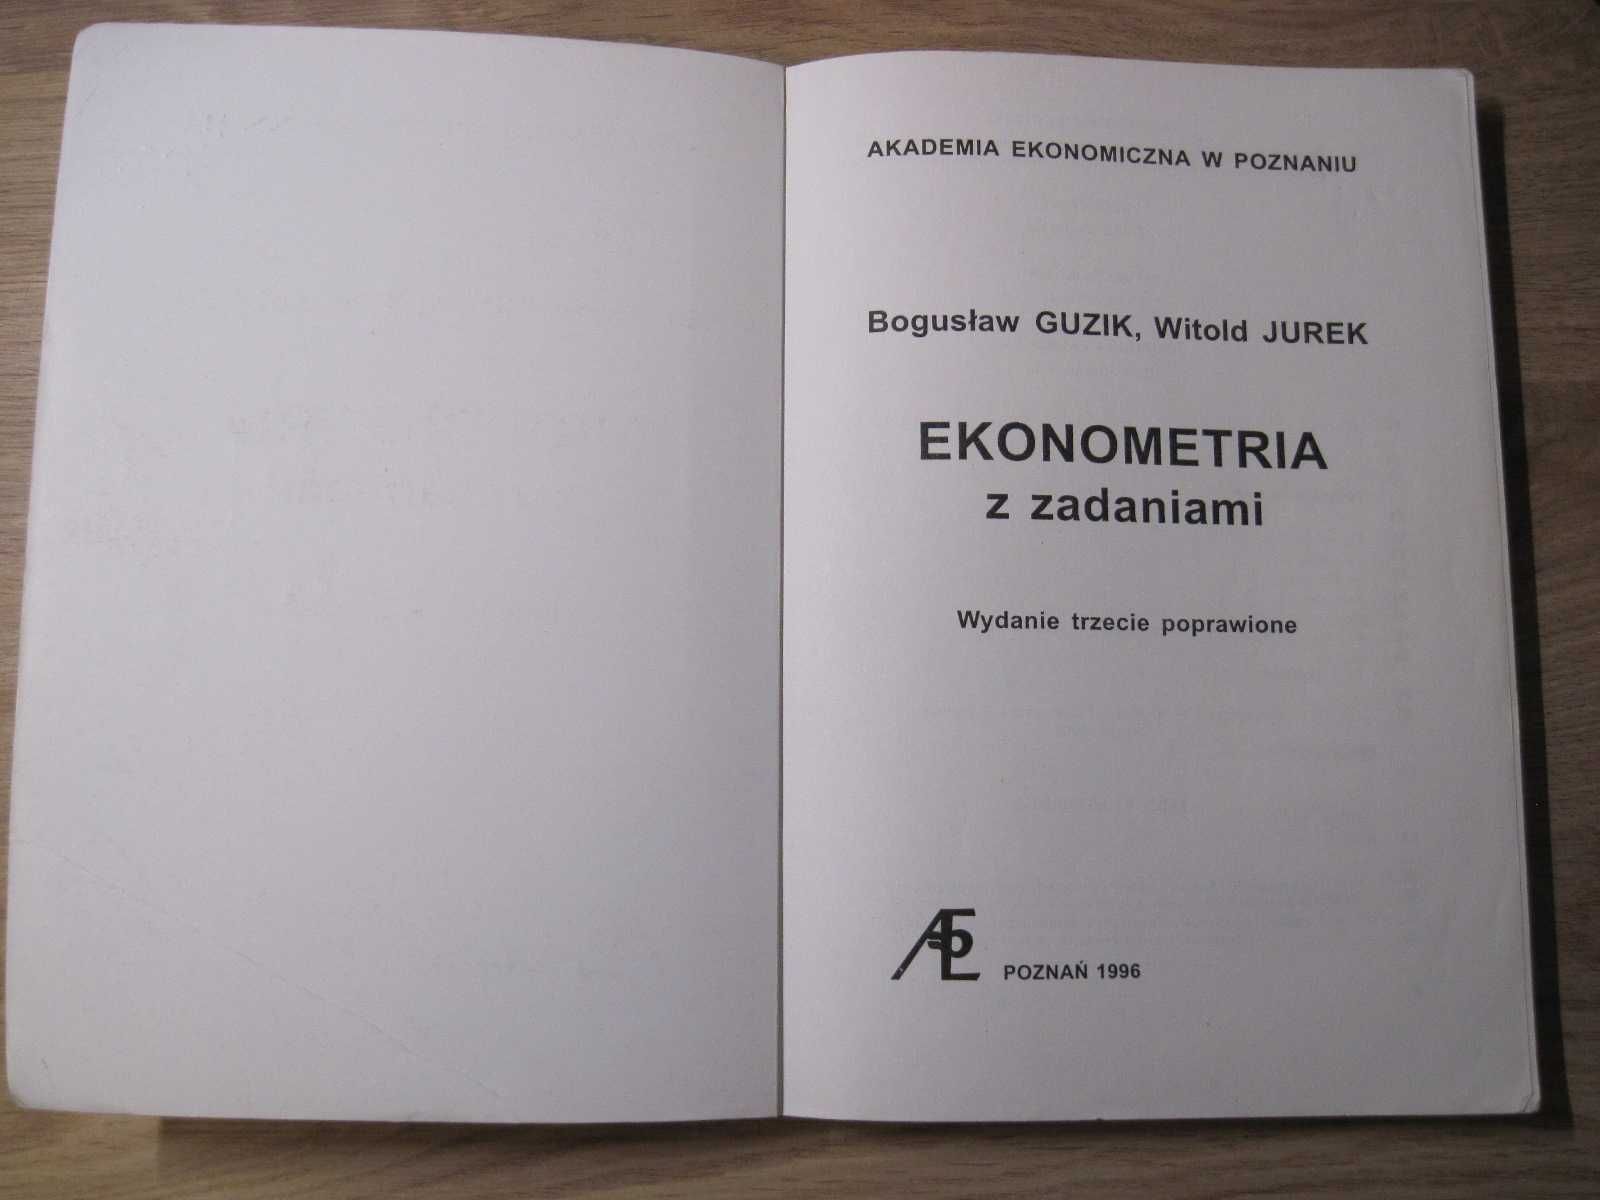 B. Guzik, W. Jurek ,,Ekonometria z zadaniami"